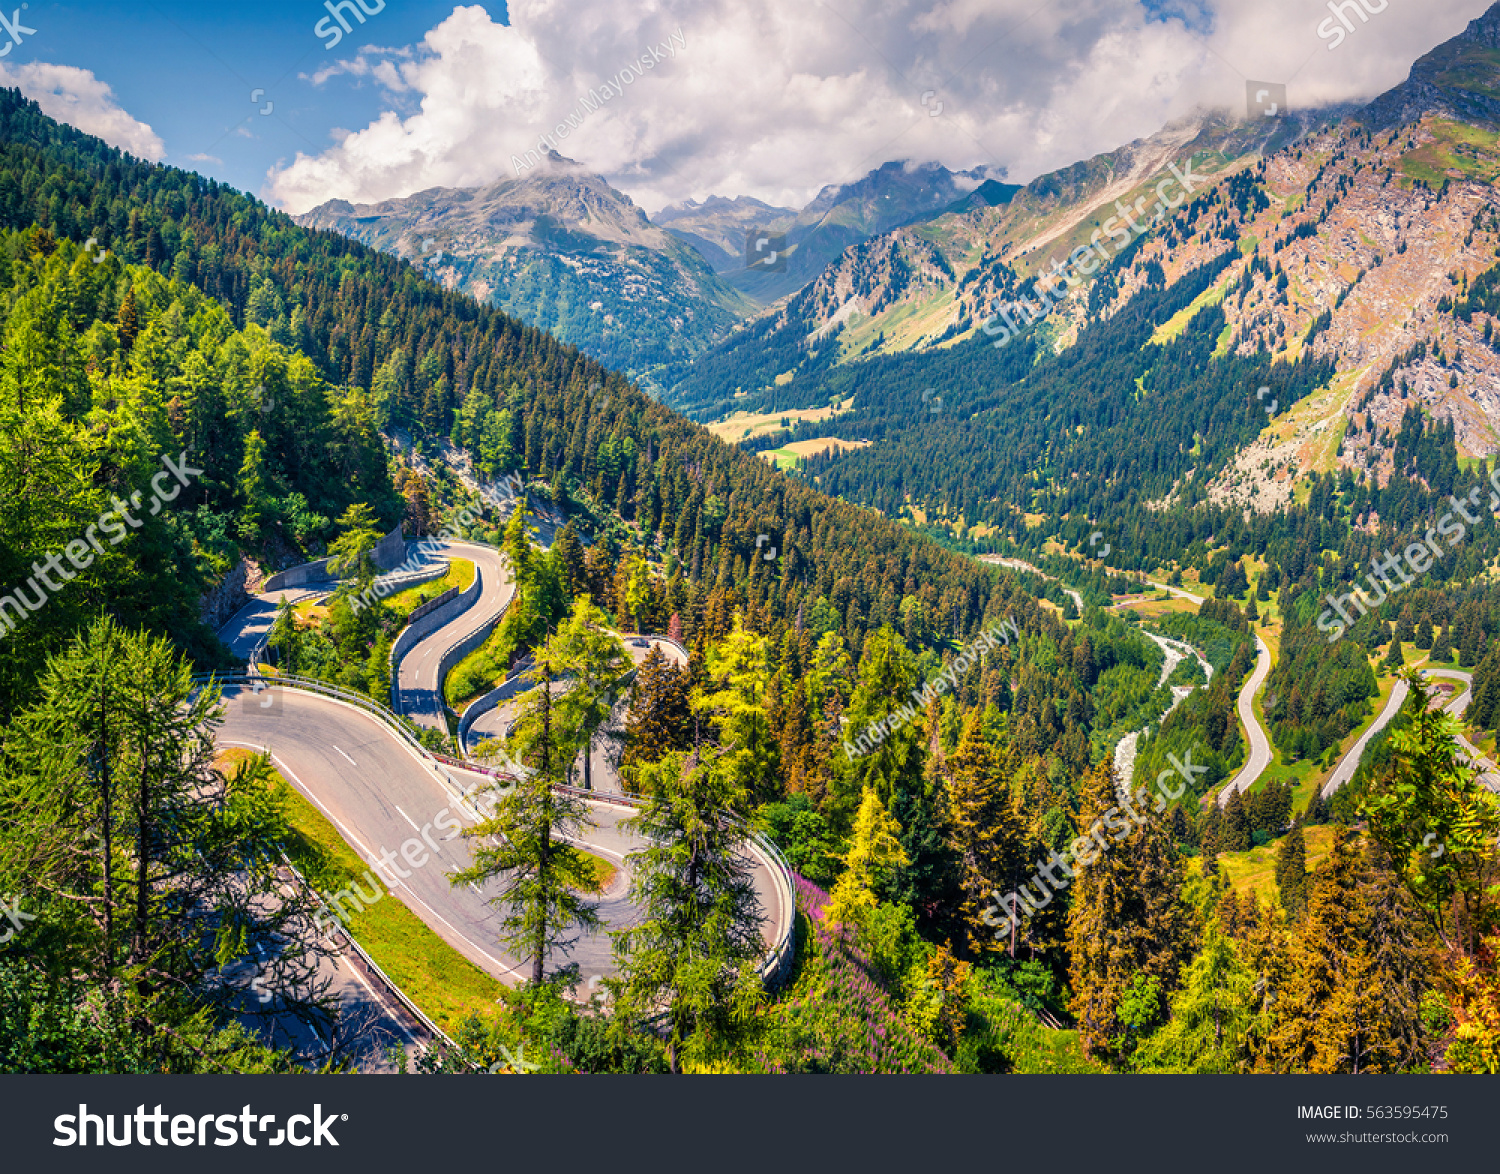 COFEIYISI Face Cover Natürliche Ansicht von Maloja Pass Alpen Schweiz Europa Berge Waldstraße Sturmhaube Wiederverwendbare Anti-Staub-Mund-Bandanas mit 2 Filtern